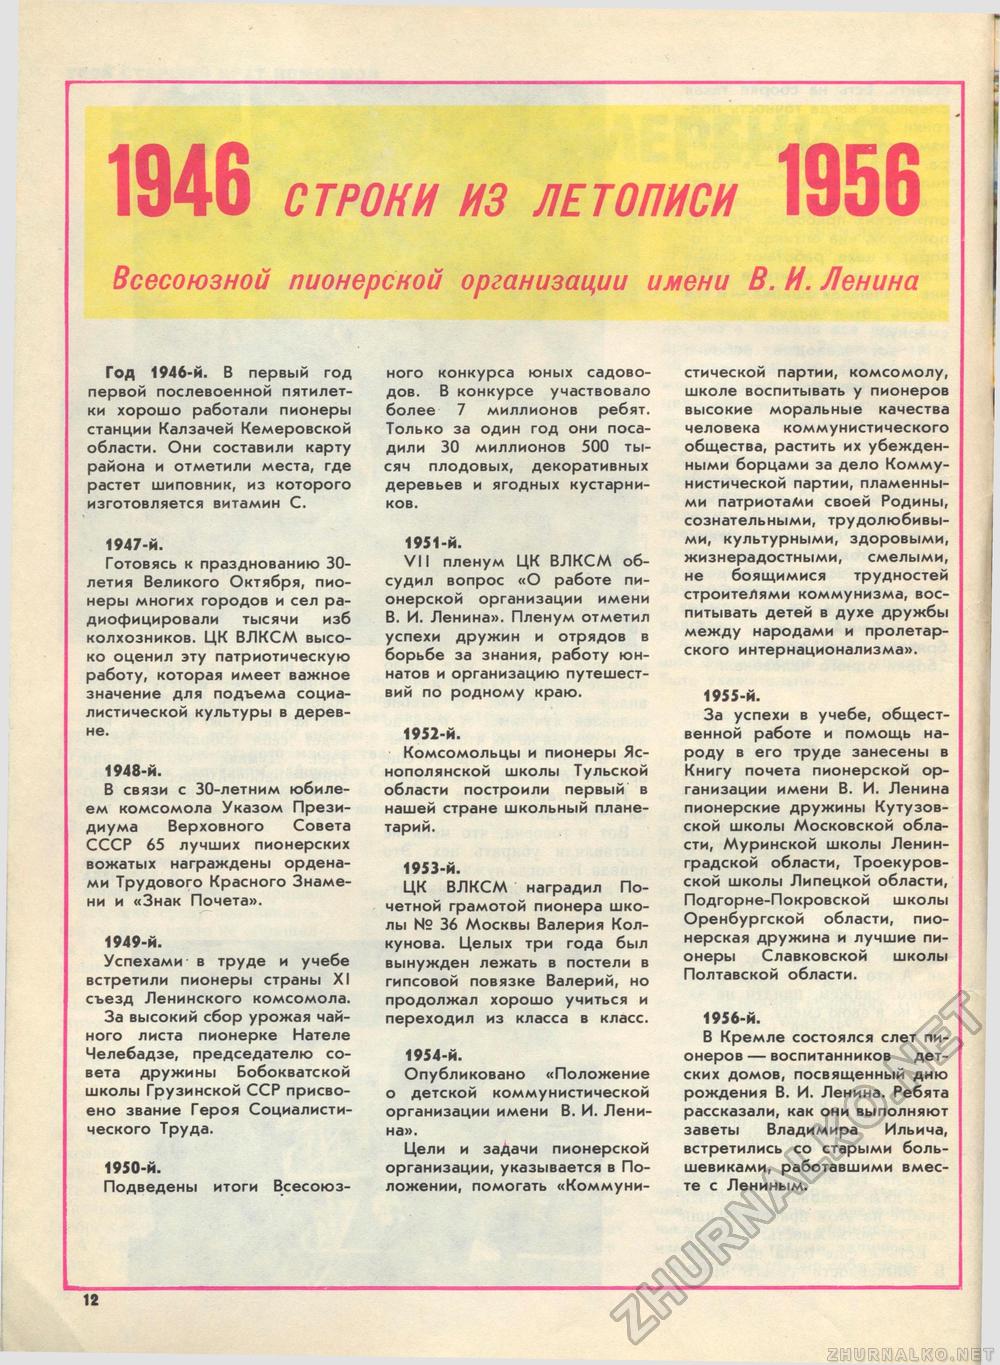  1982-05,  17